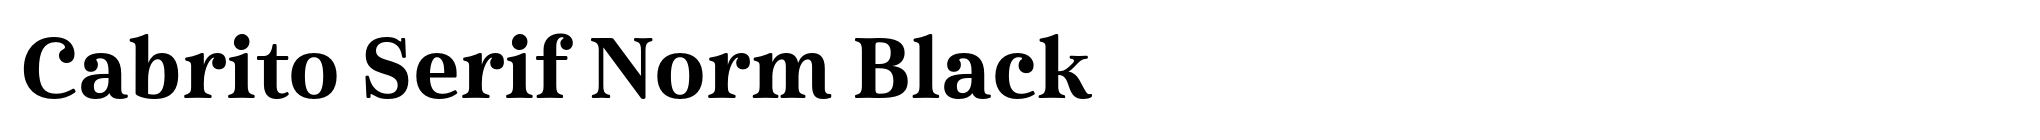 Cabrito Serif Norm Black image